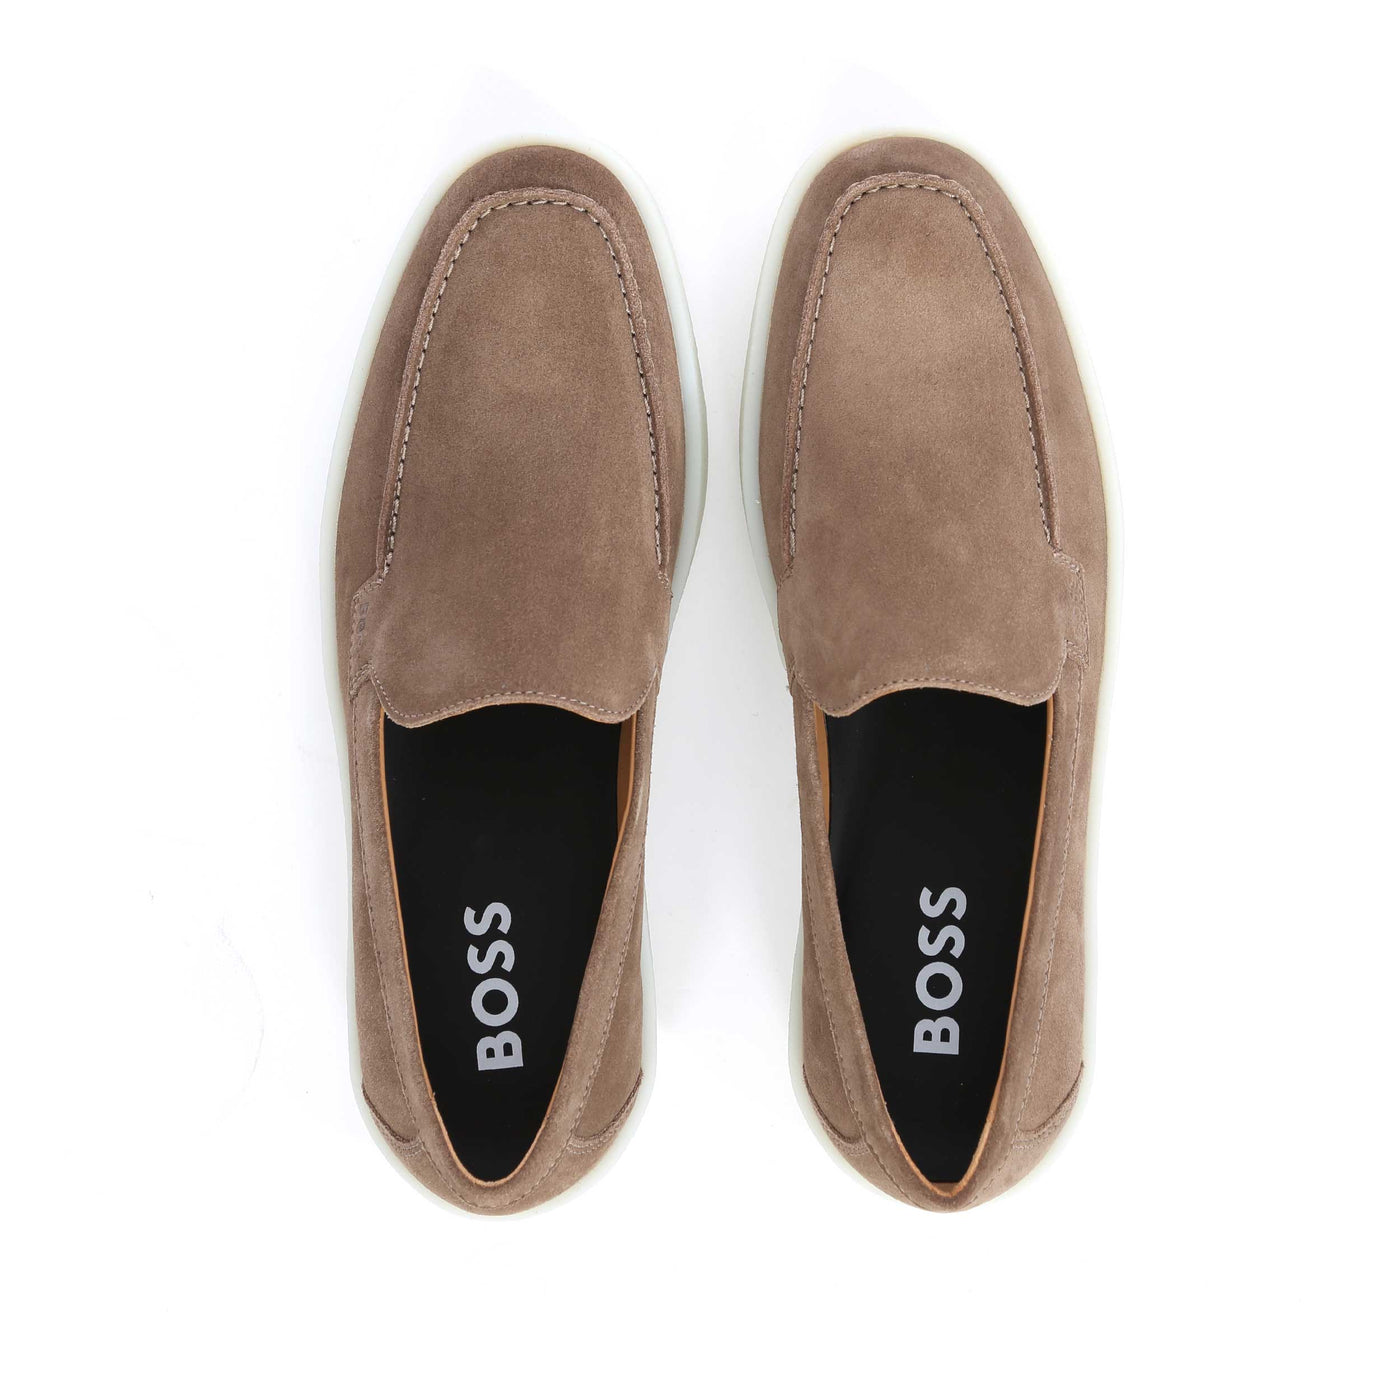 BOSS Clay Loaf sd Shoe in Medium Beige Birdseye